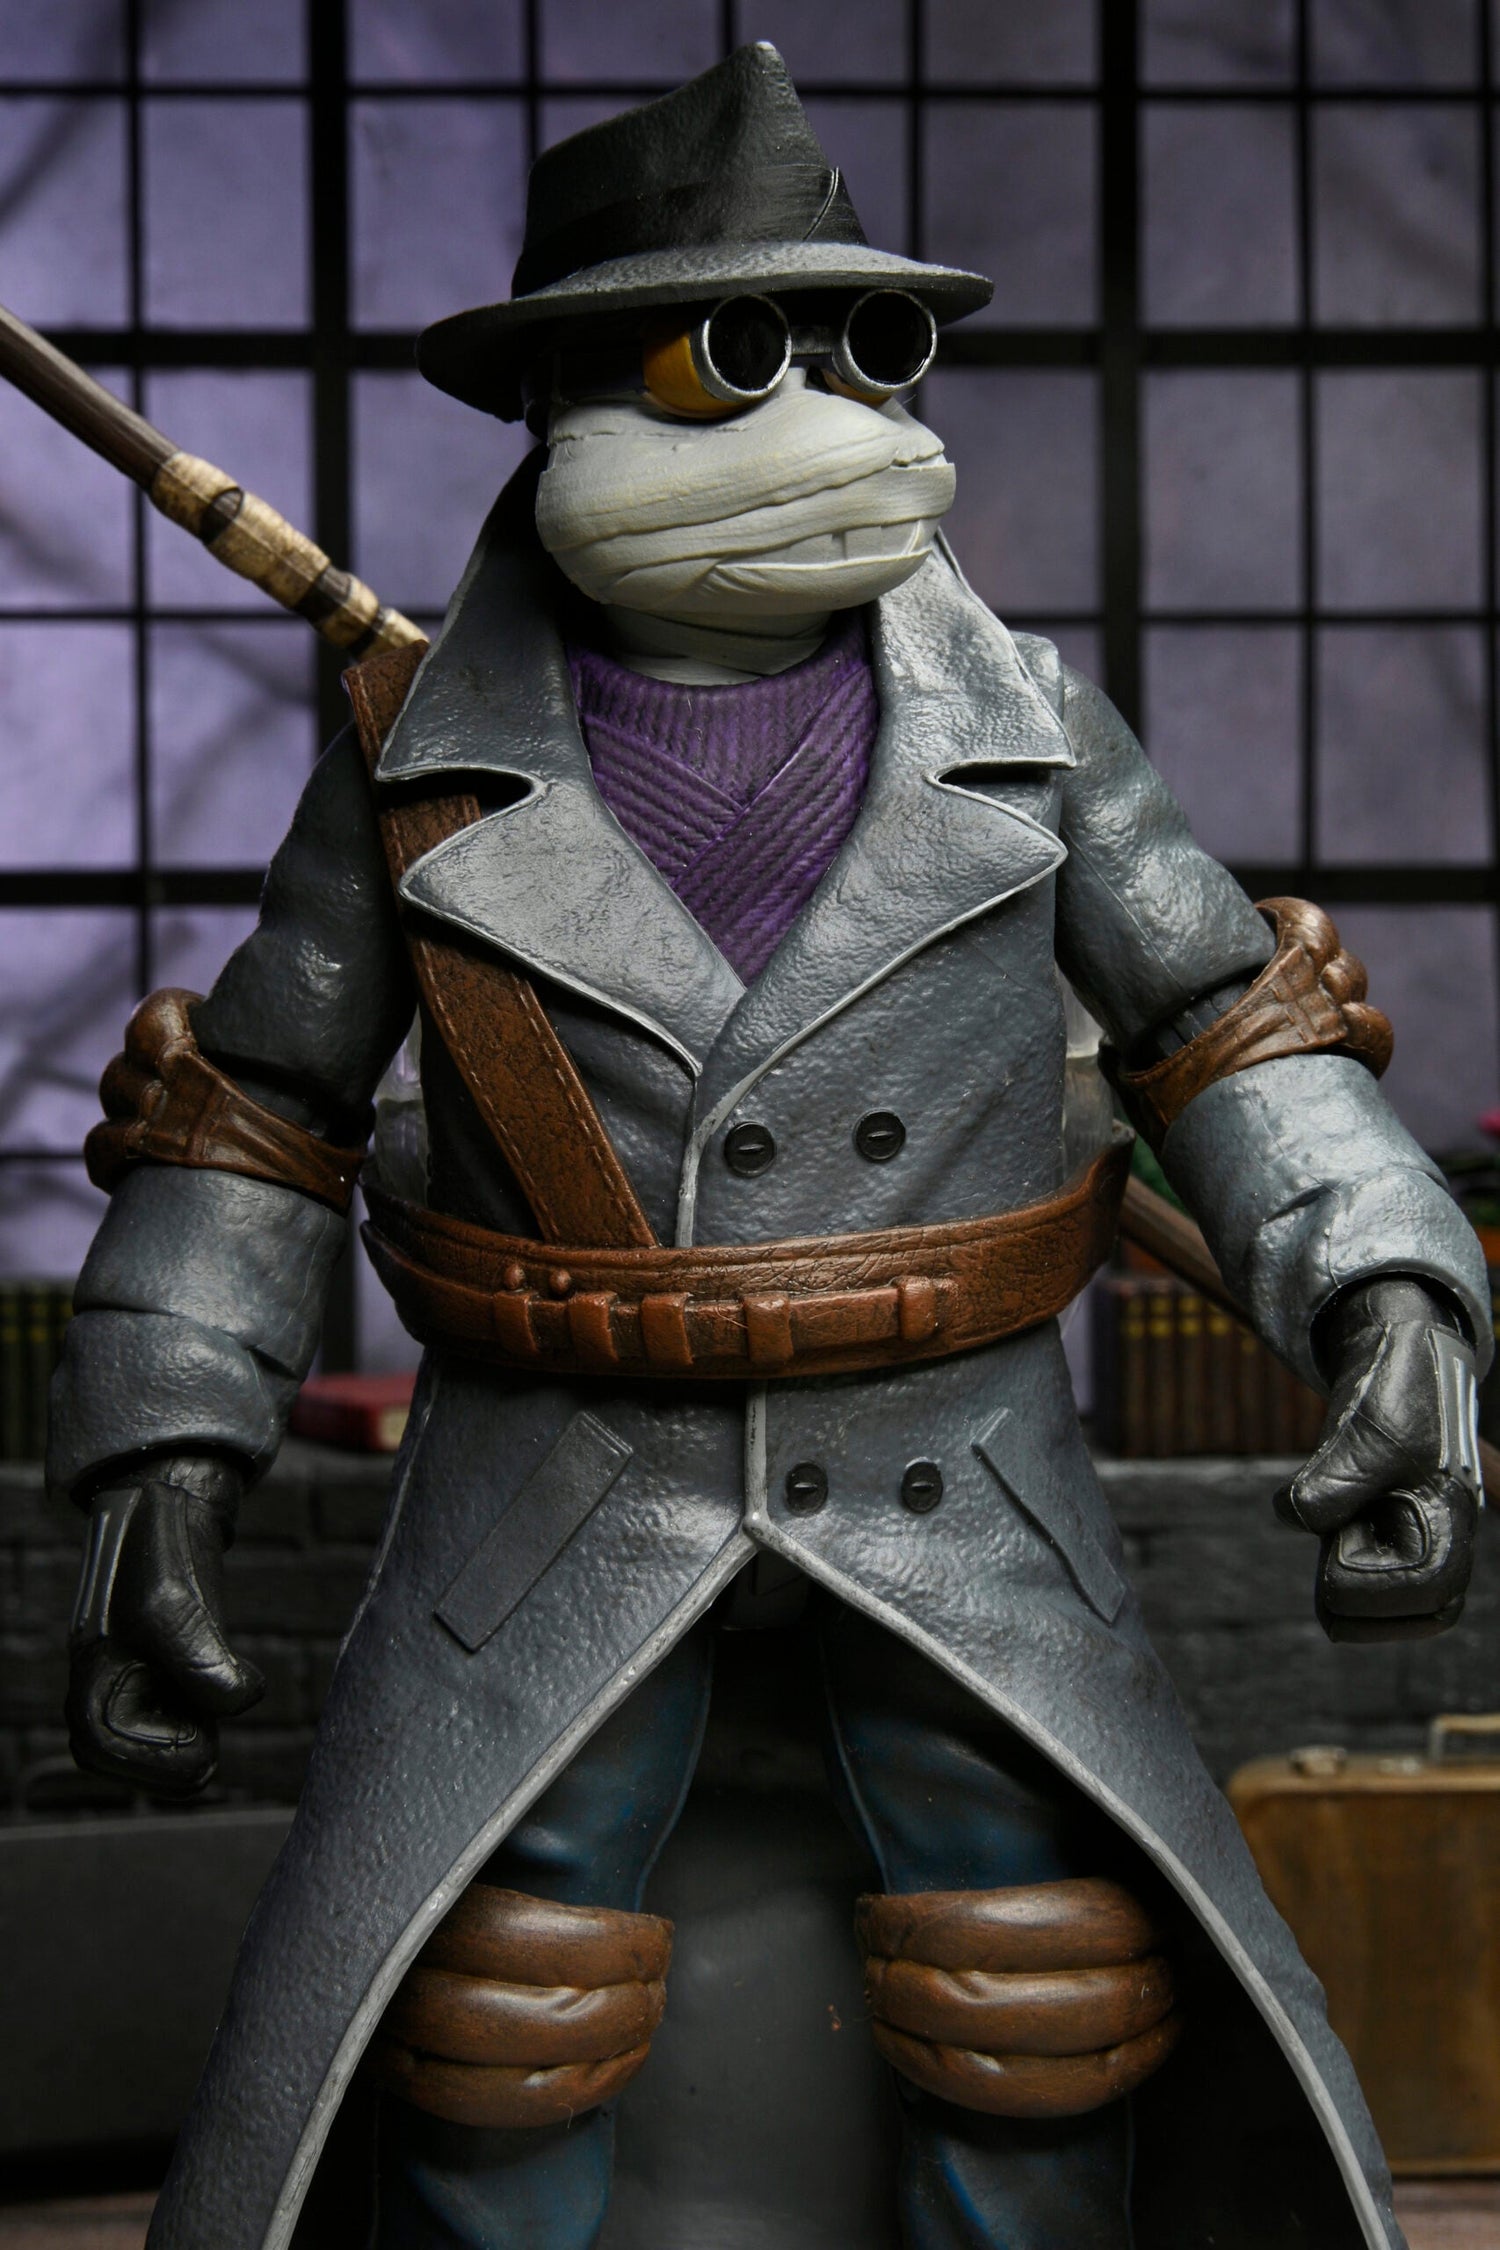 NECA Universal Monsters Teenage Mutant Ninja Turtles Donatello as The Invisible Man NECA